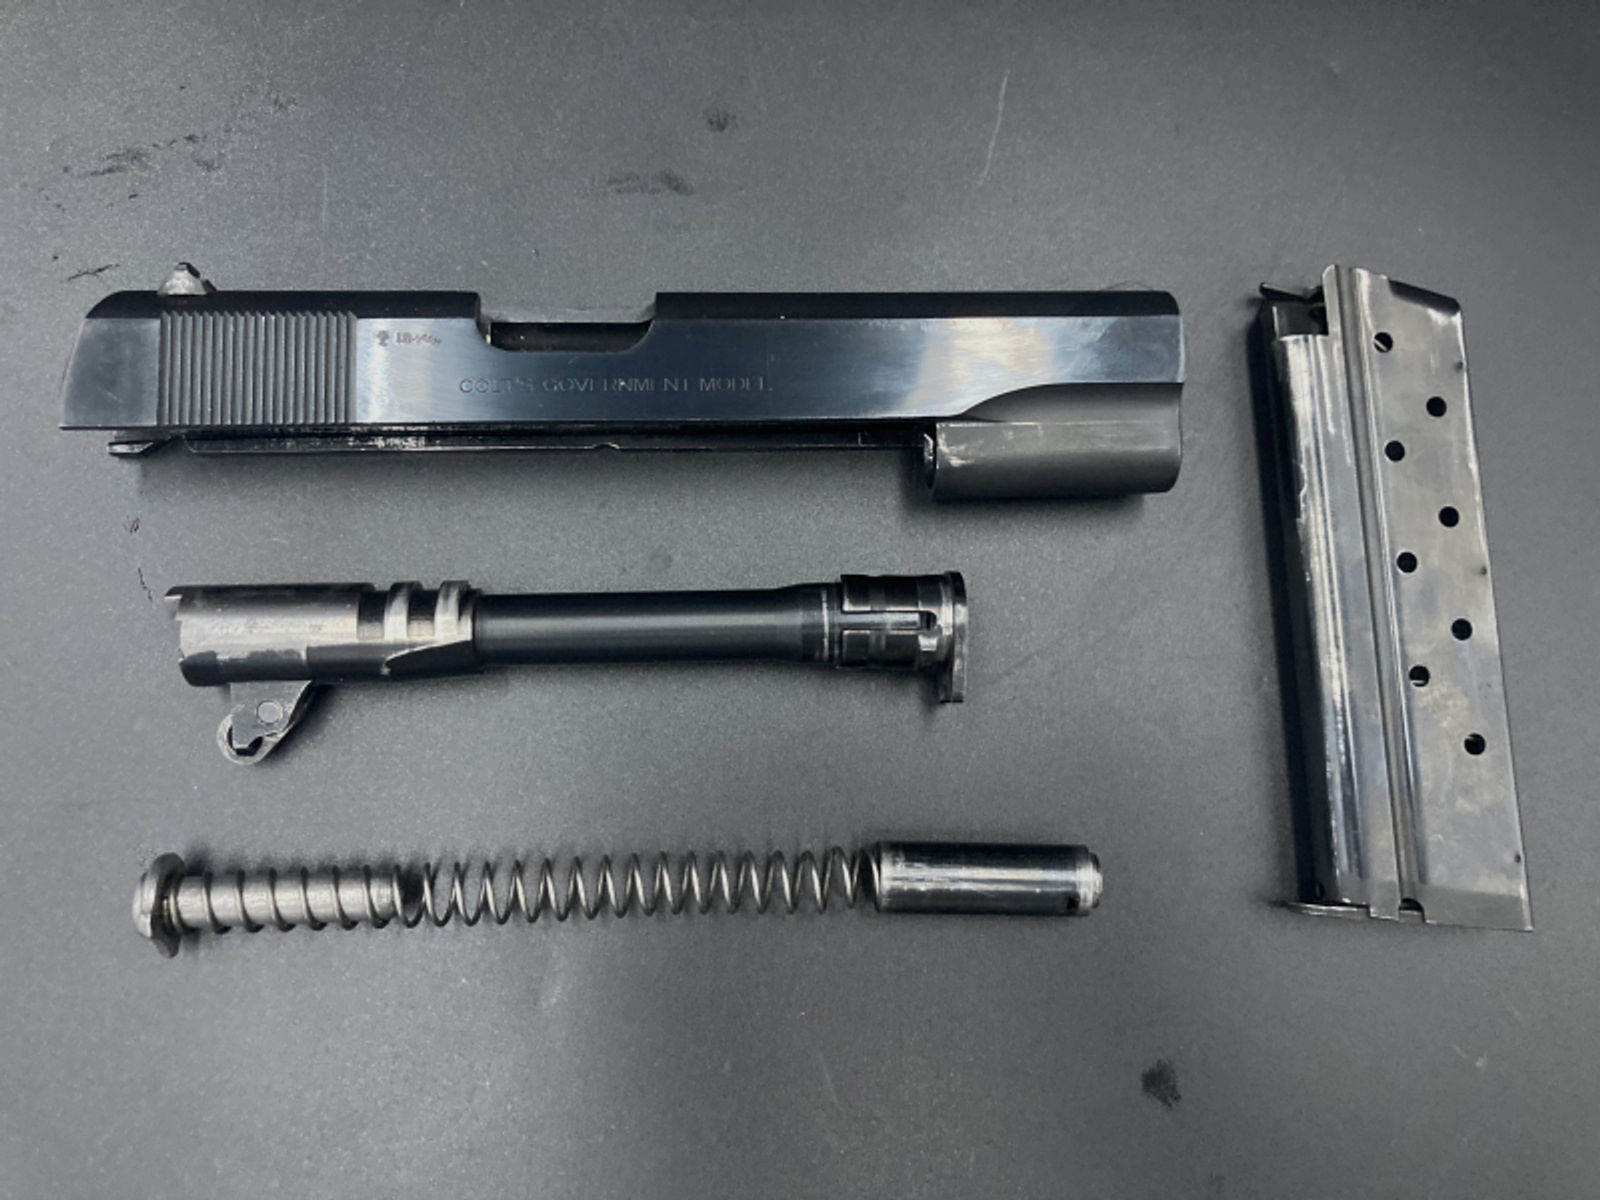 Wechselsystem Colt 1911 Kaliber 9mm Luger - keine Anrechnung auf das Grundkontingent